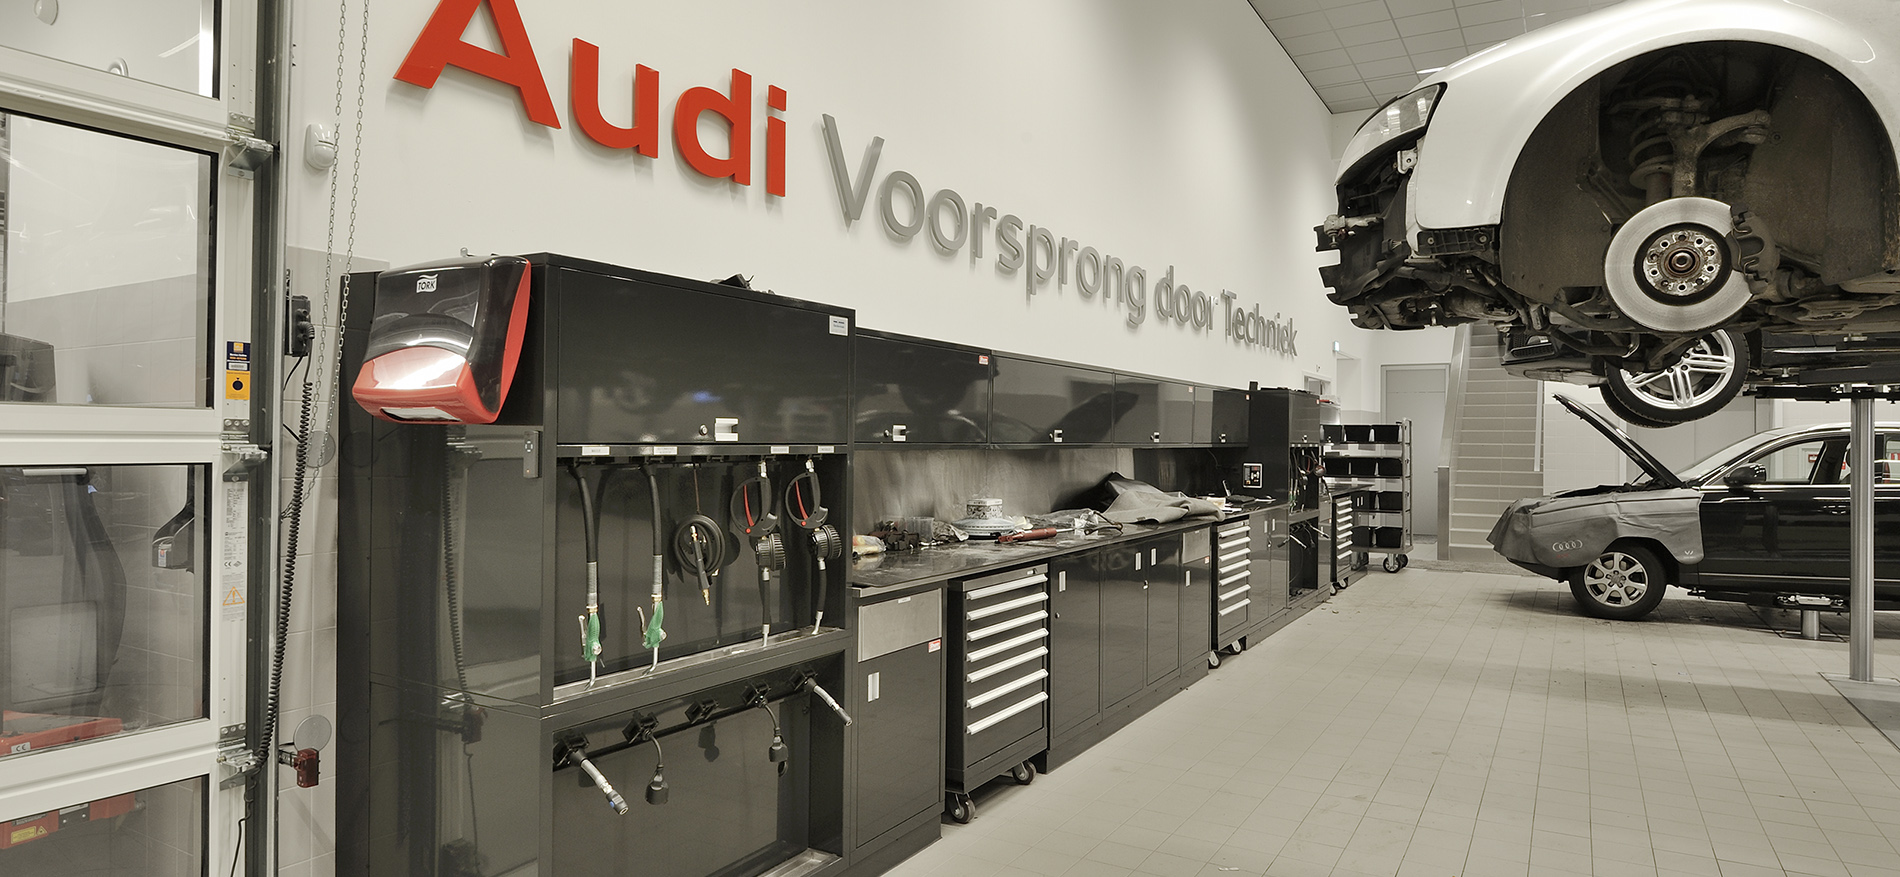 Inrichting showroom Audi by Pon, Amerfoort - 